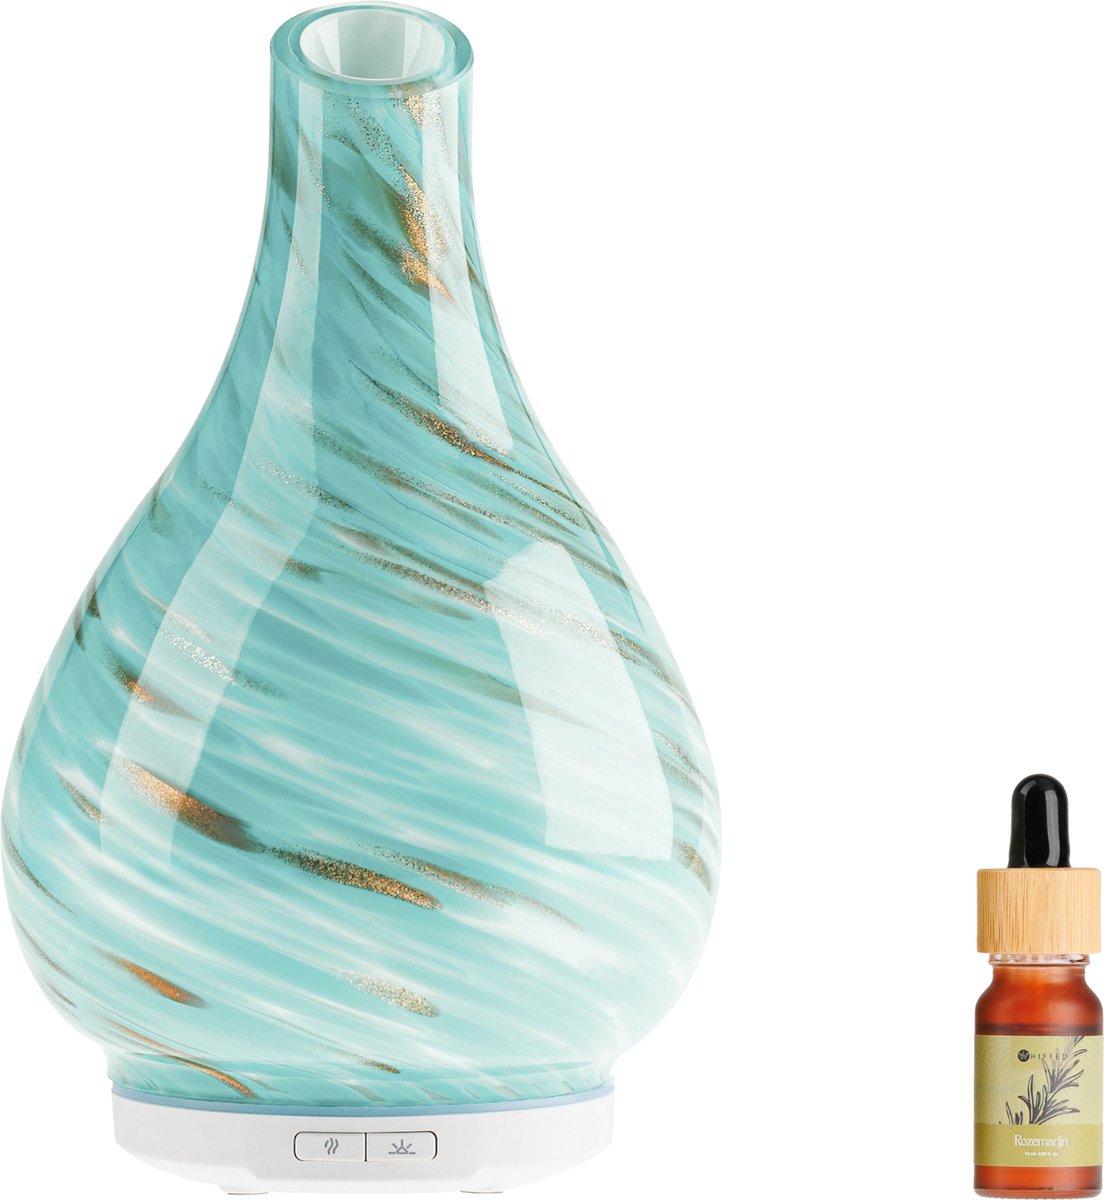 Whiffed® Luxe Aroma Diffuser Incl. Etherische olie - Rozemarijn - Geurverspreider met Glazen Design - 8 uur Aromatherapie - Tot 80m2 - Essentiële Olie Vernevelaar & Diffuser